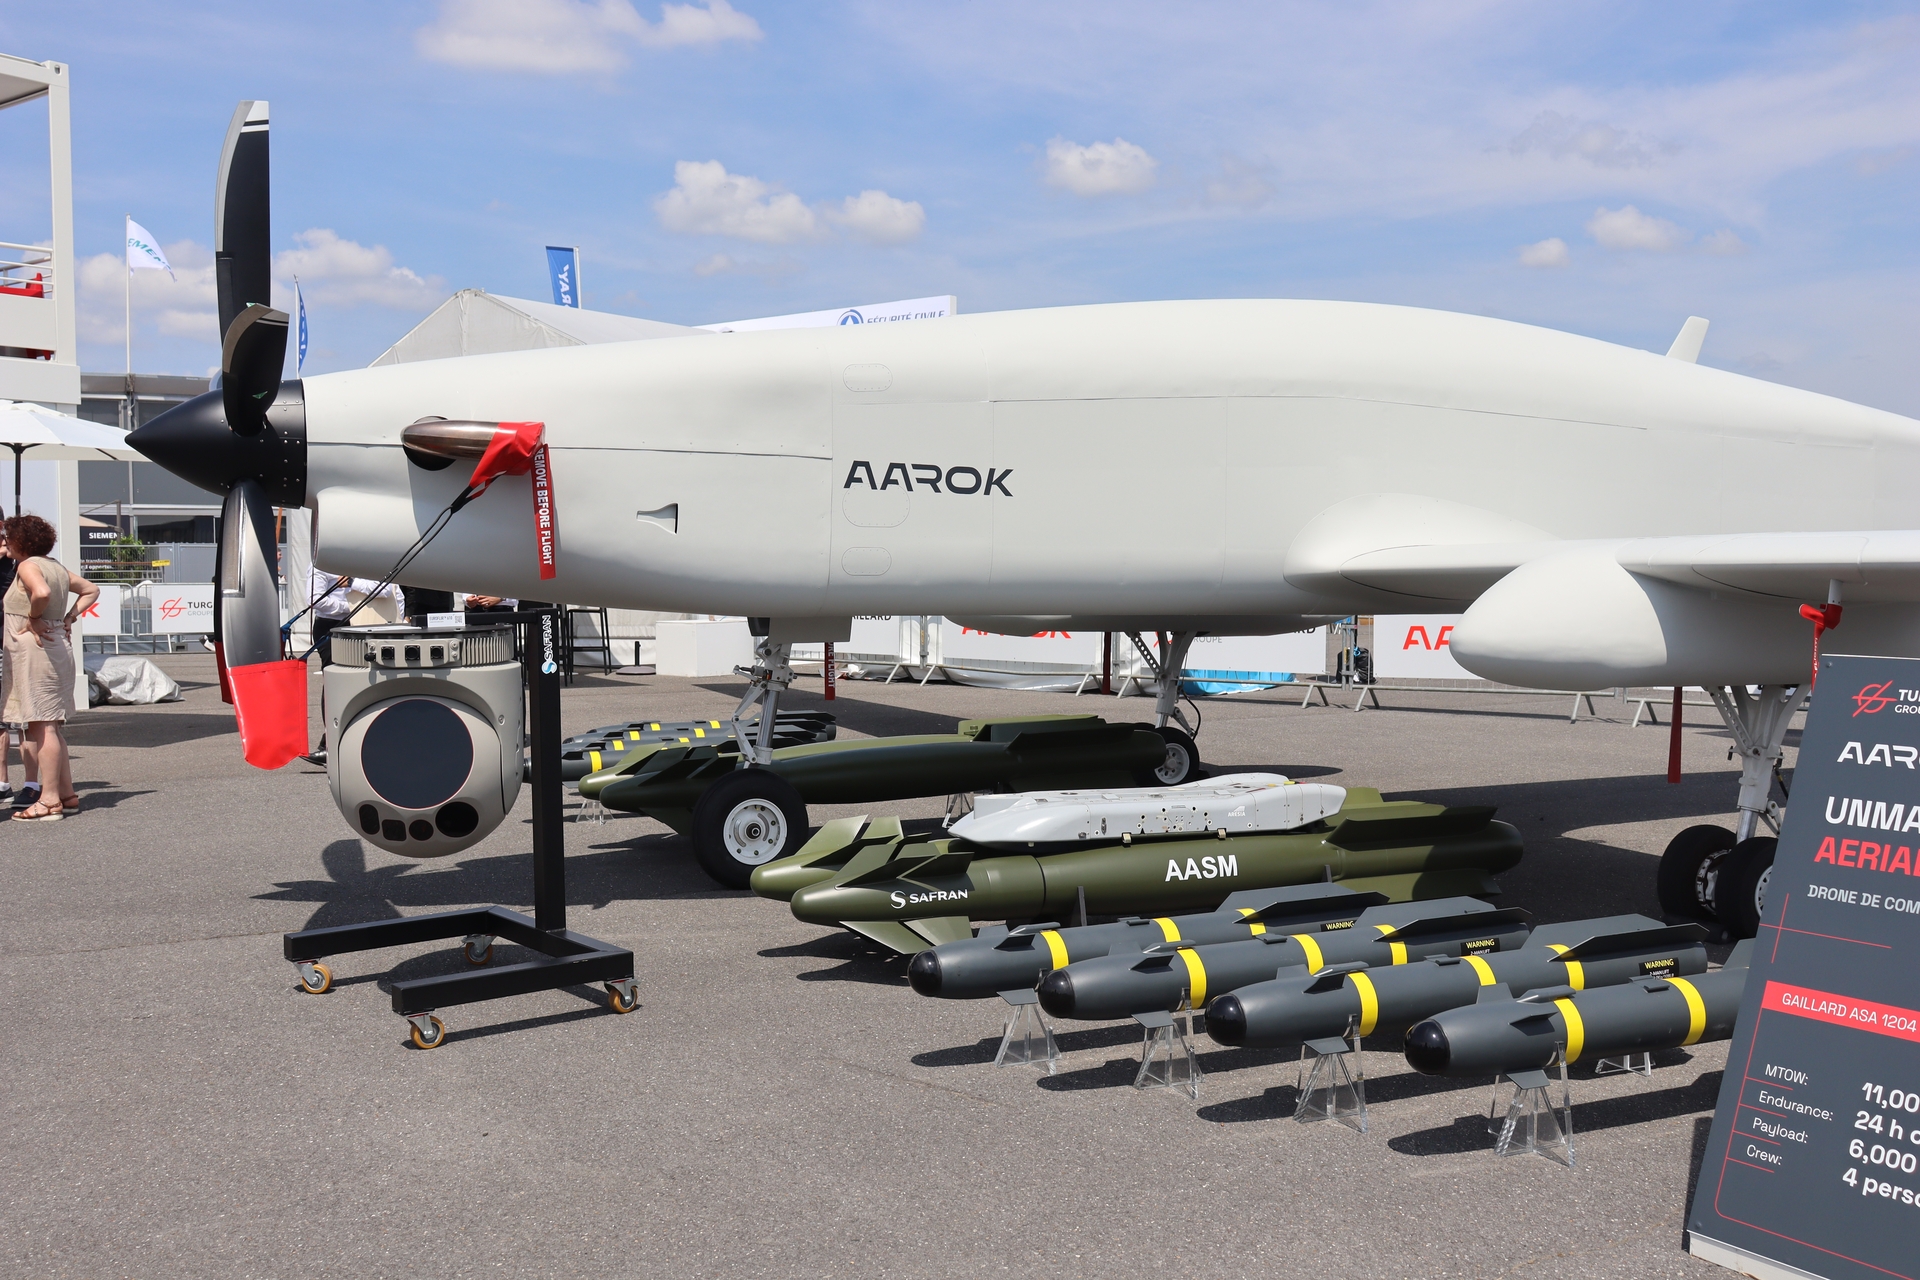 Az AAROK harci tevékenységre és megfigyelésre egyaránt használható drónt a francia Turgis & Gaillard cég fejlesztette ki, a légijármű maximális felszállótömege 5500 kilogramm, hajtóművének teljesítménye 1200 LE, kezeléséhez négy fő szükséges